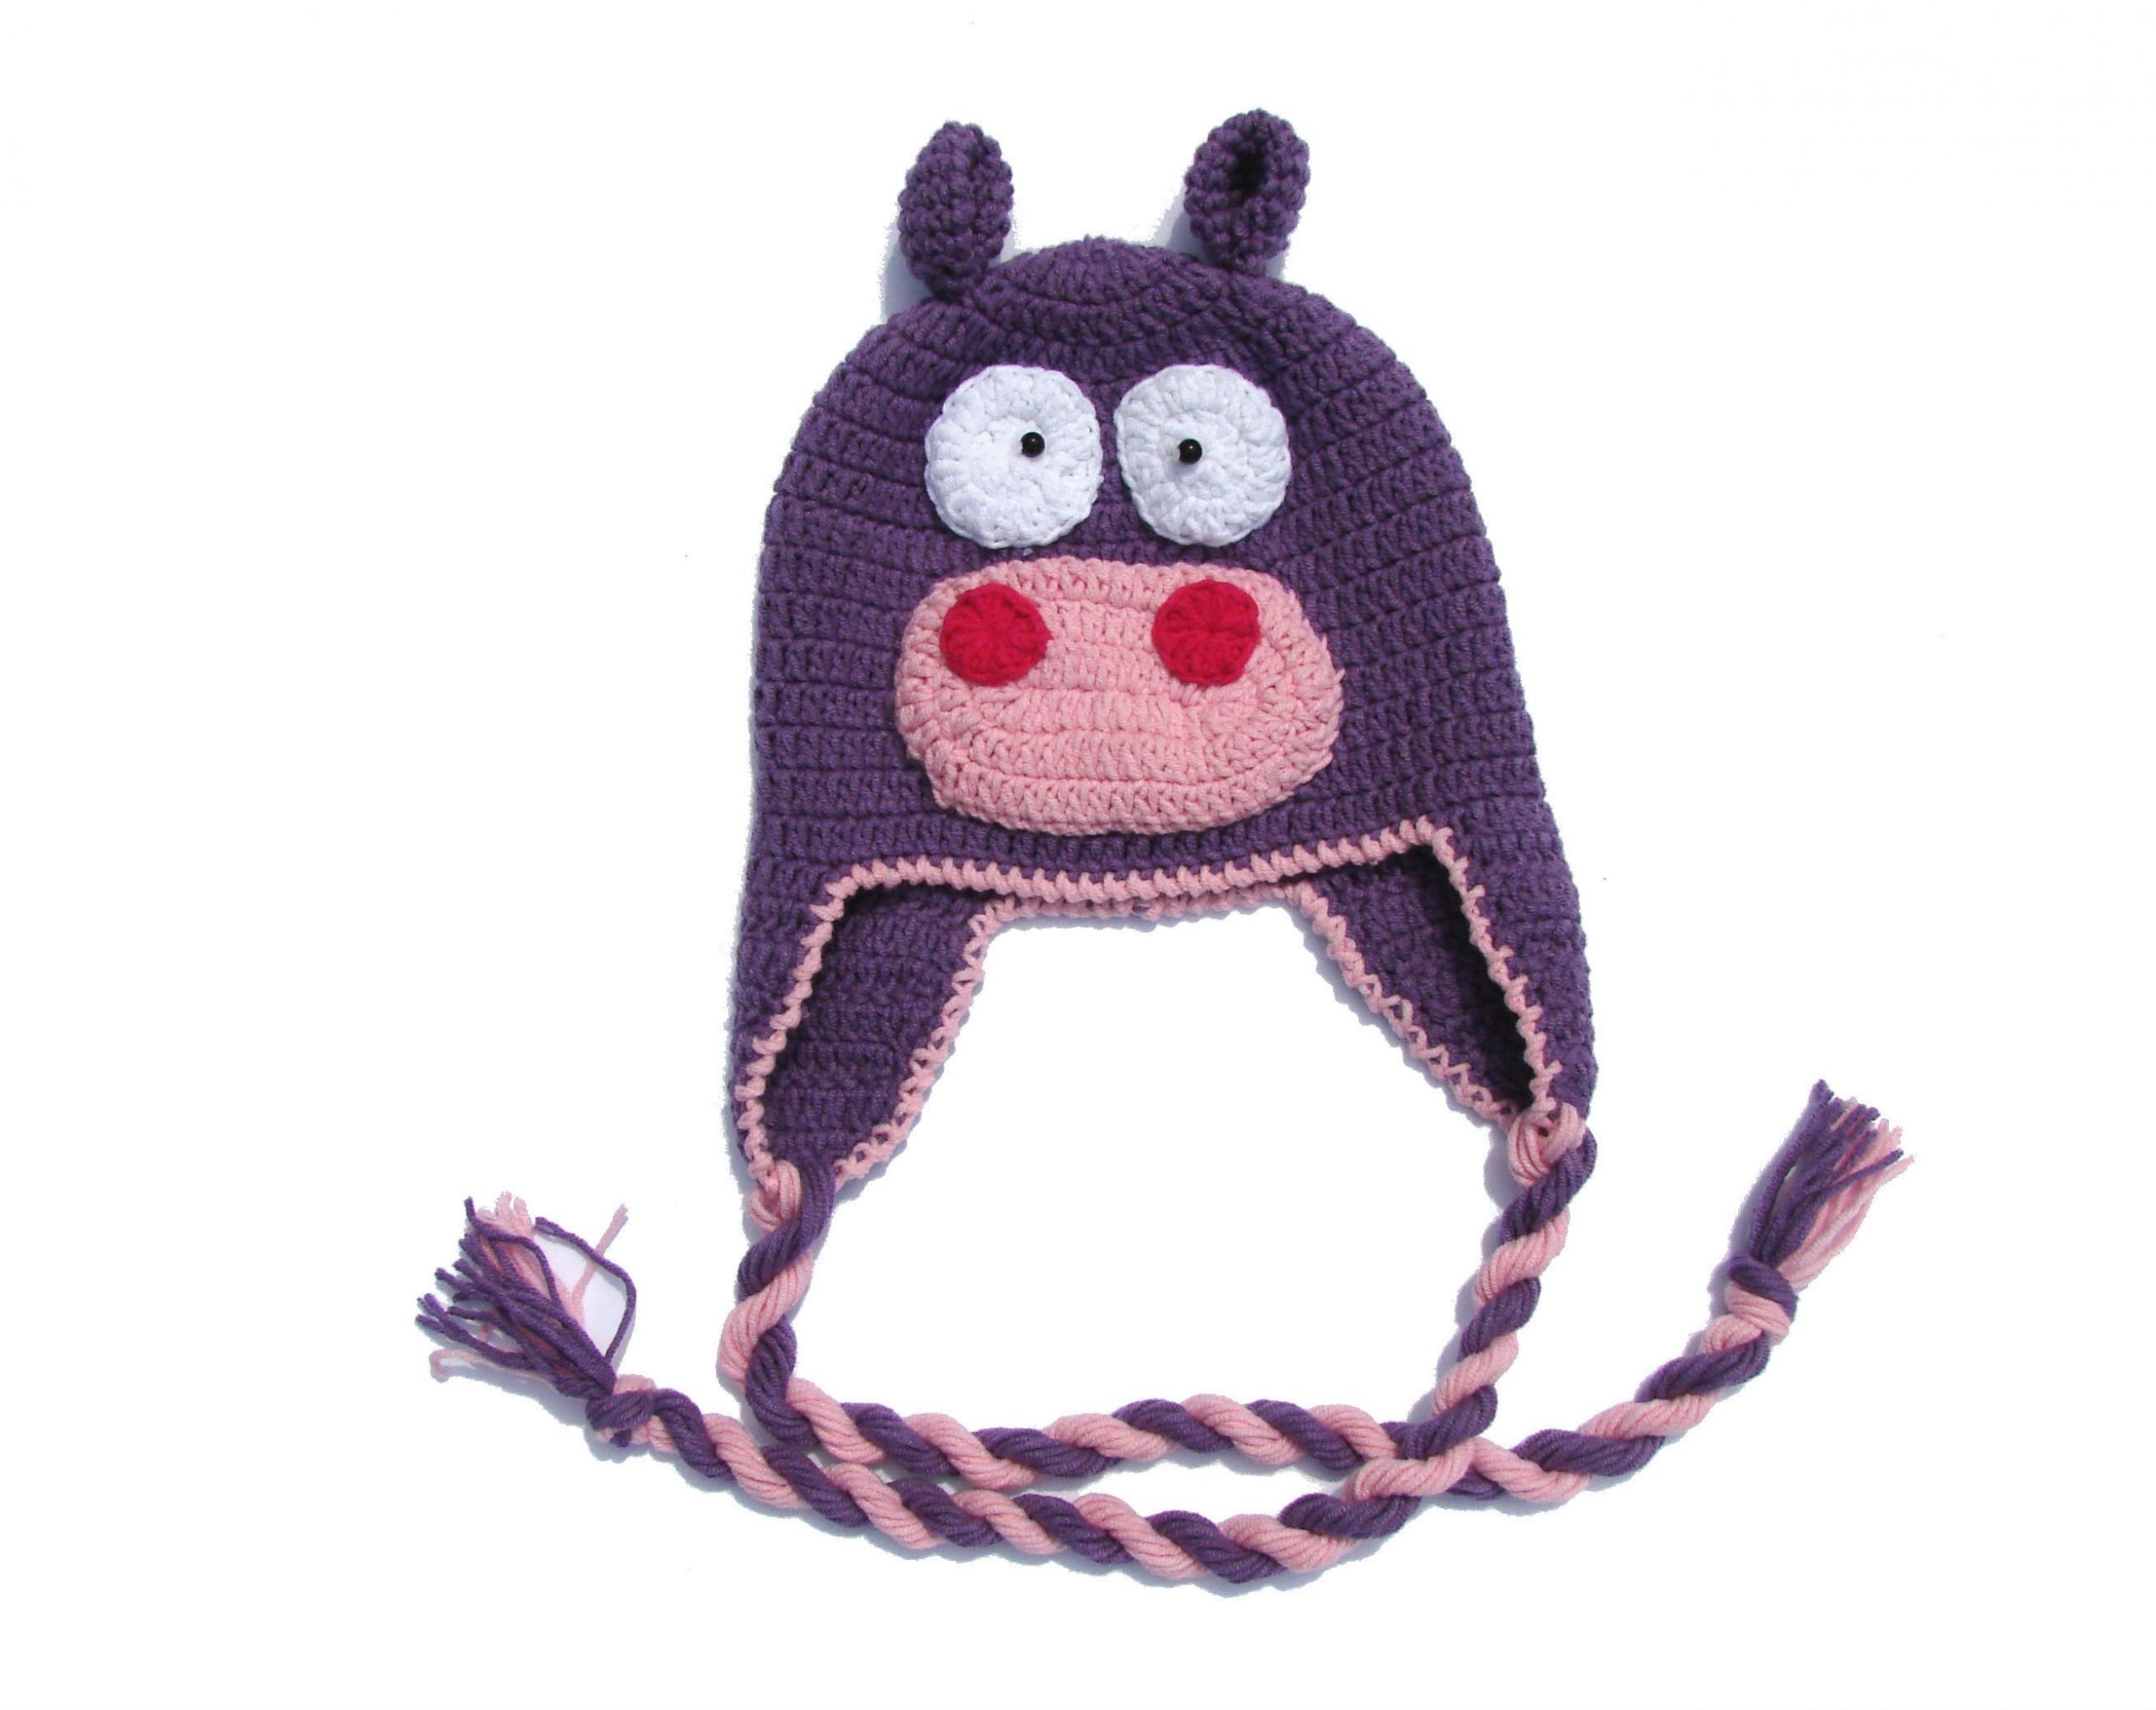 Crochet baby hat Hipo, Baby bonnet, Hand knitted cotton newborn hat, Kids animal hat, Autumn ...